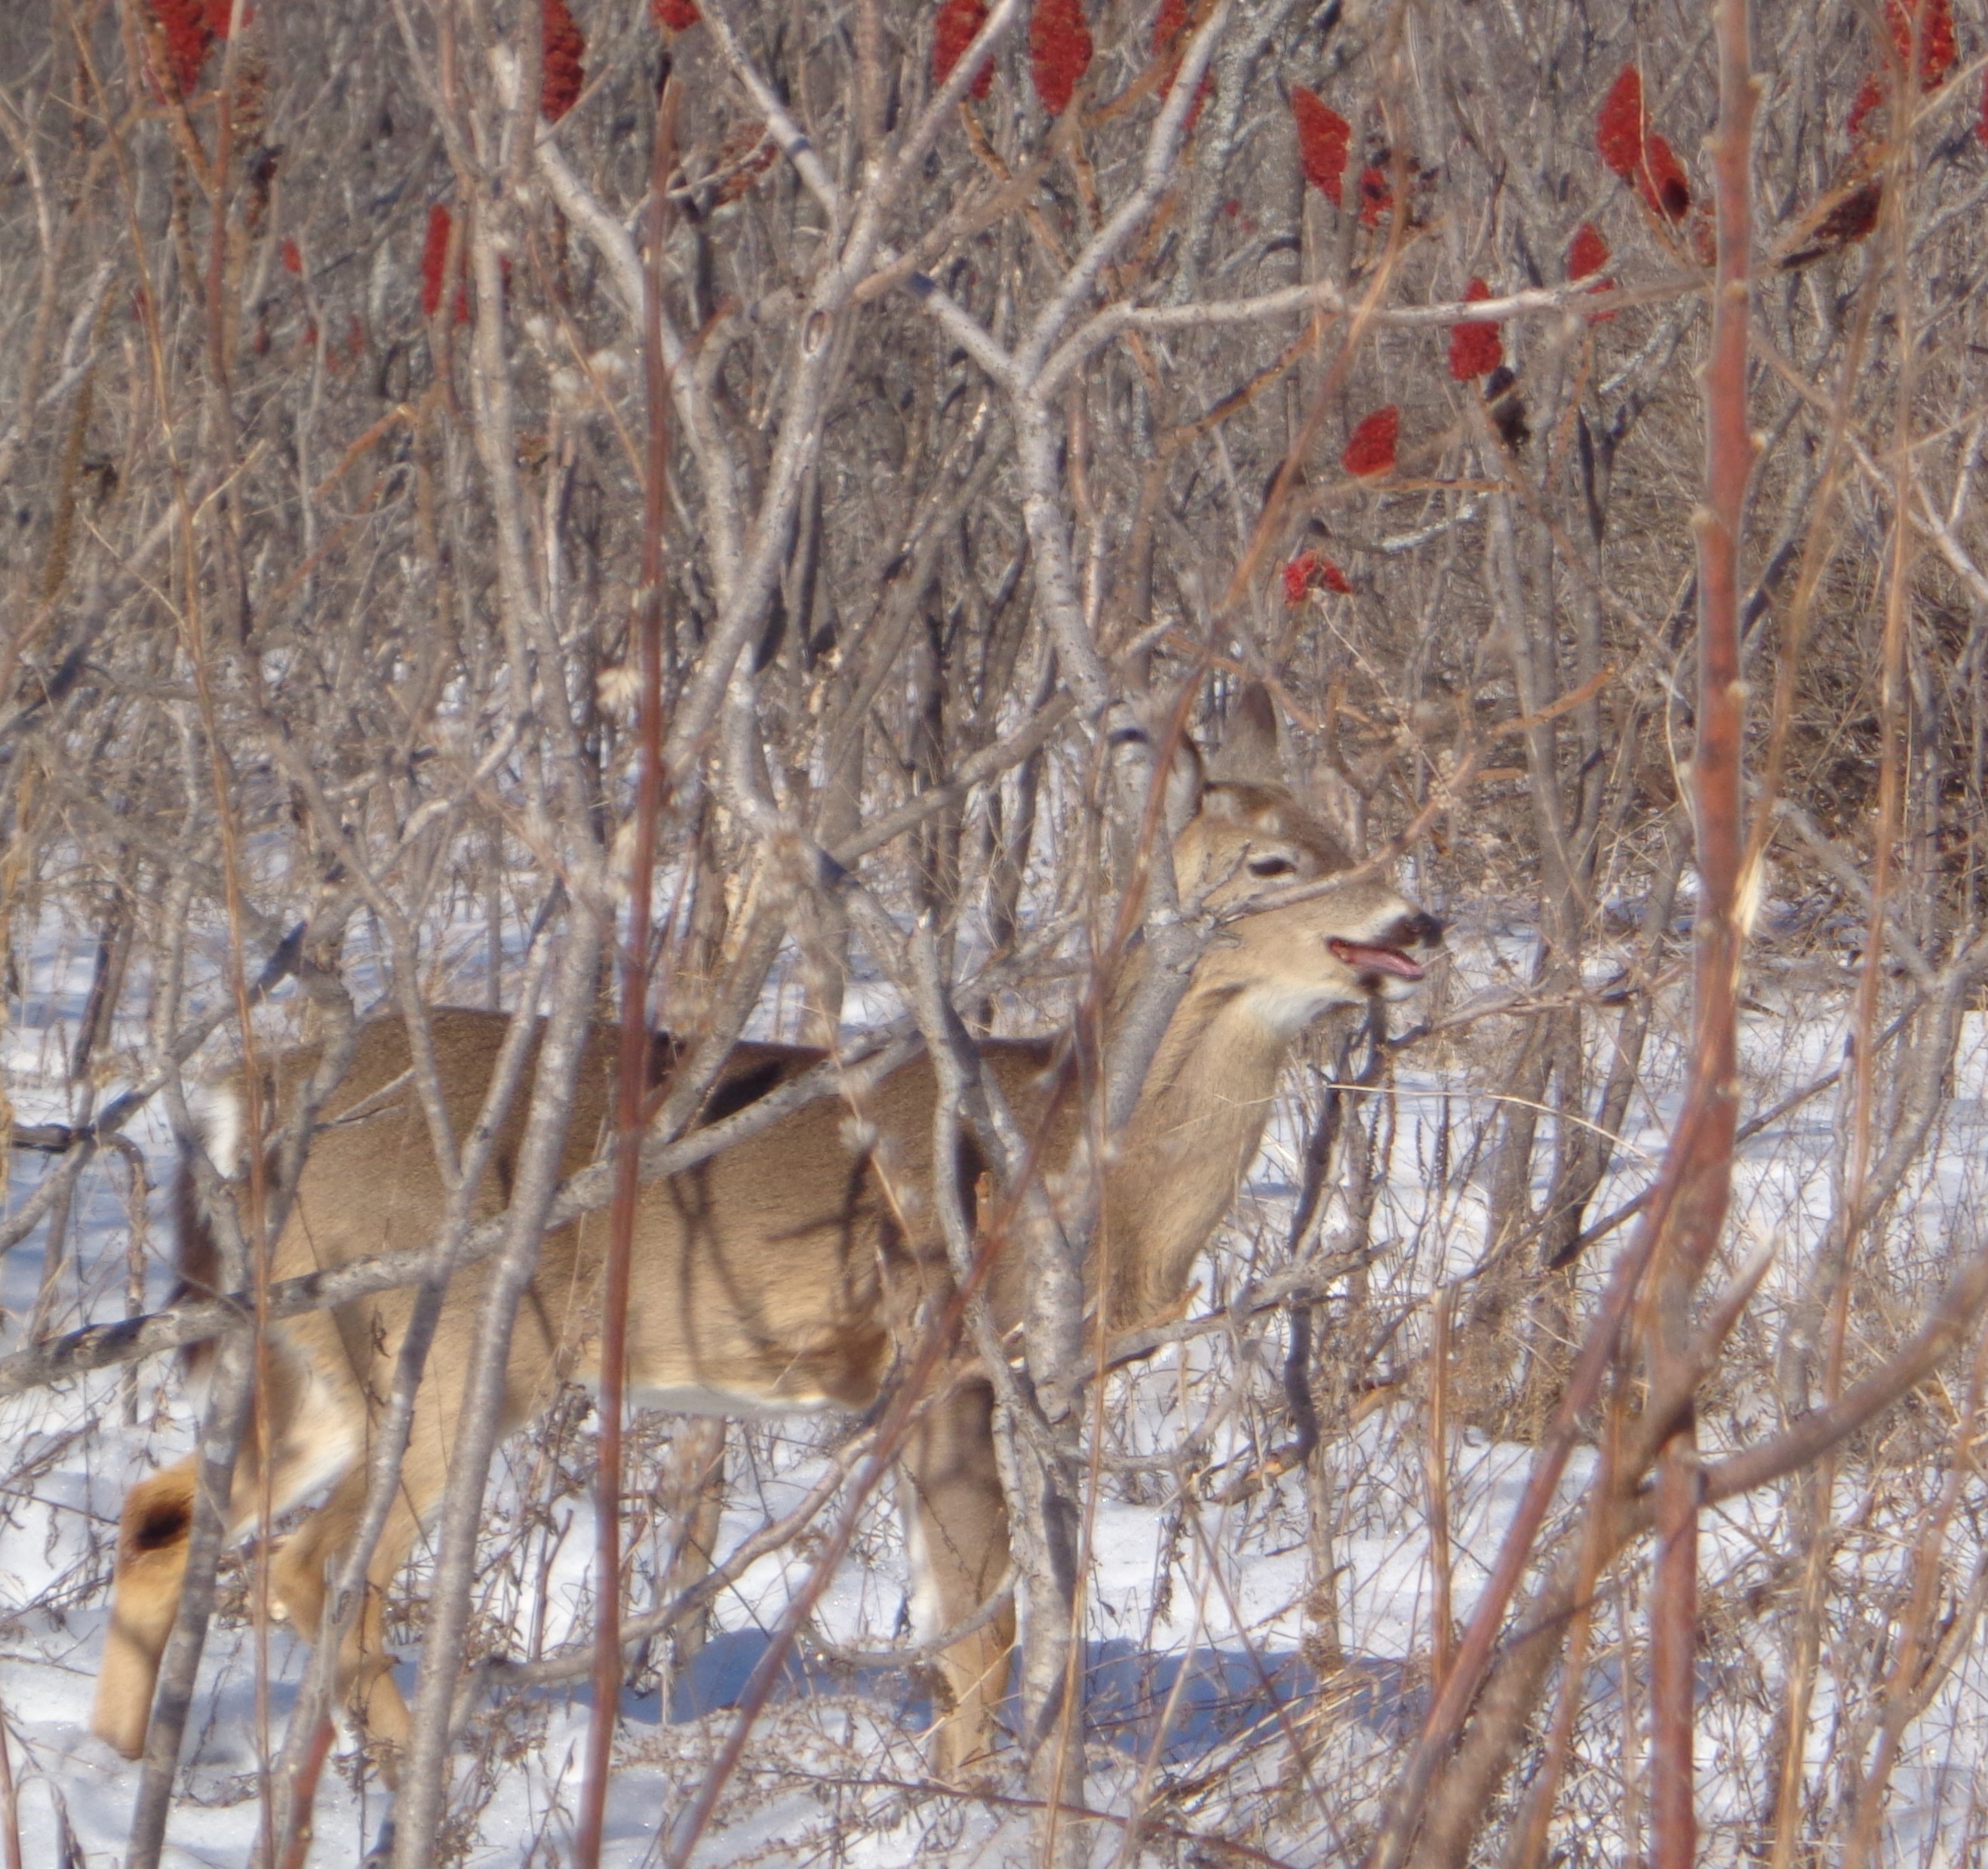 Deer at Mud Lake eating Sumac